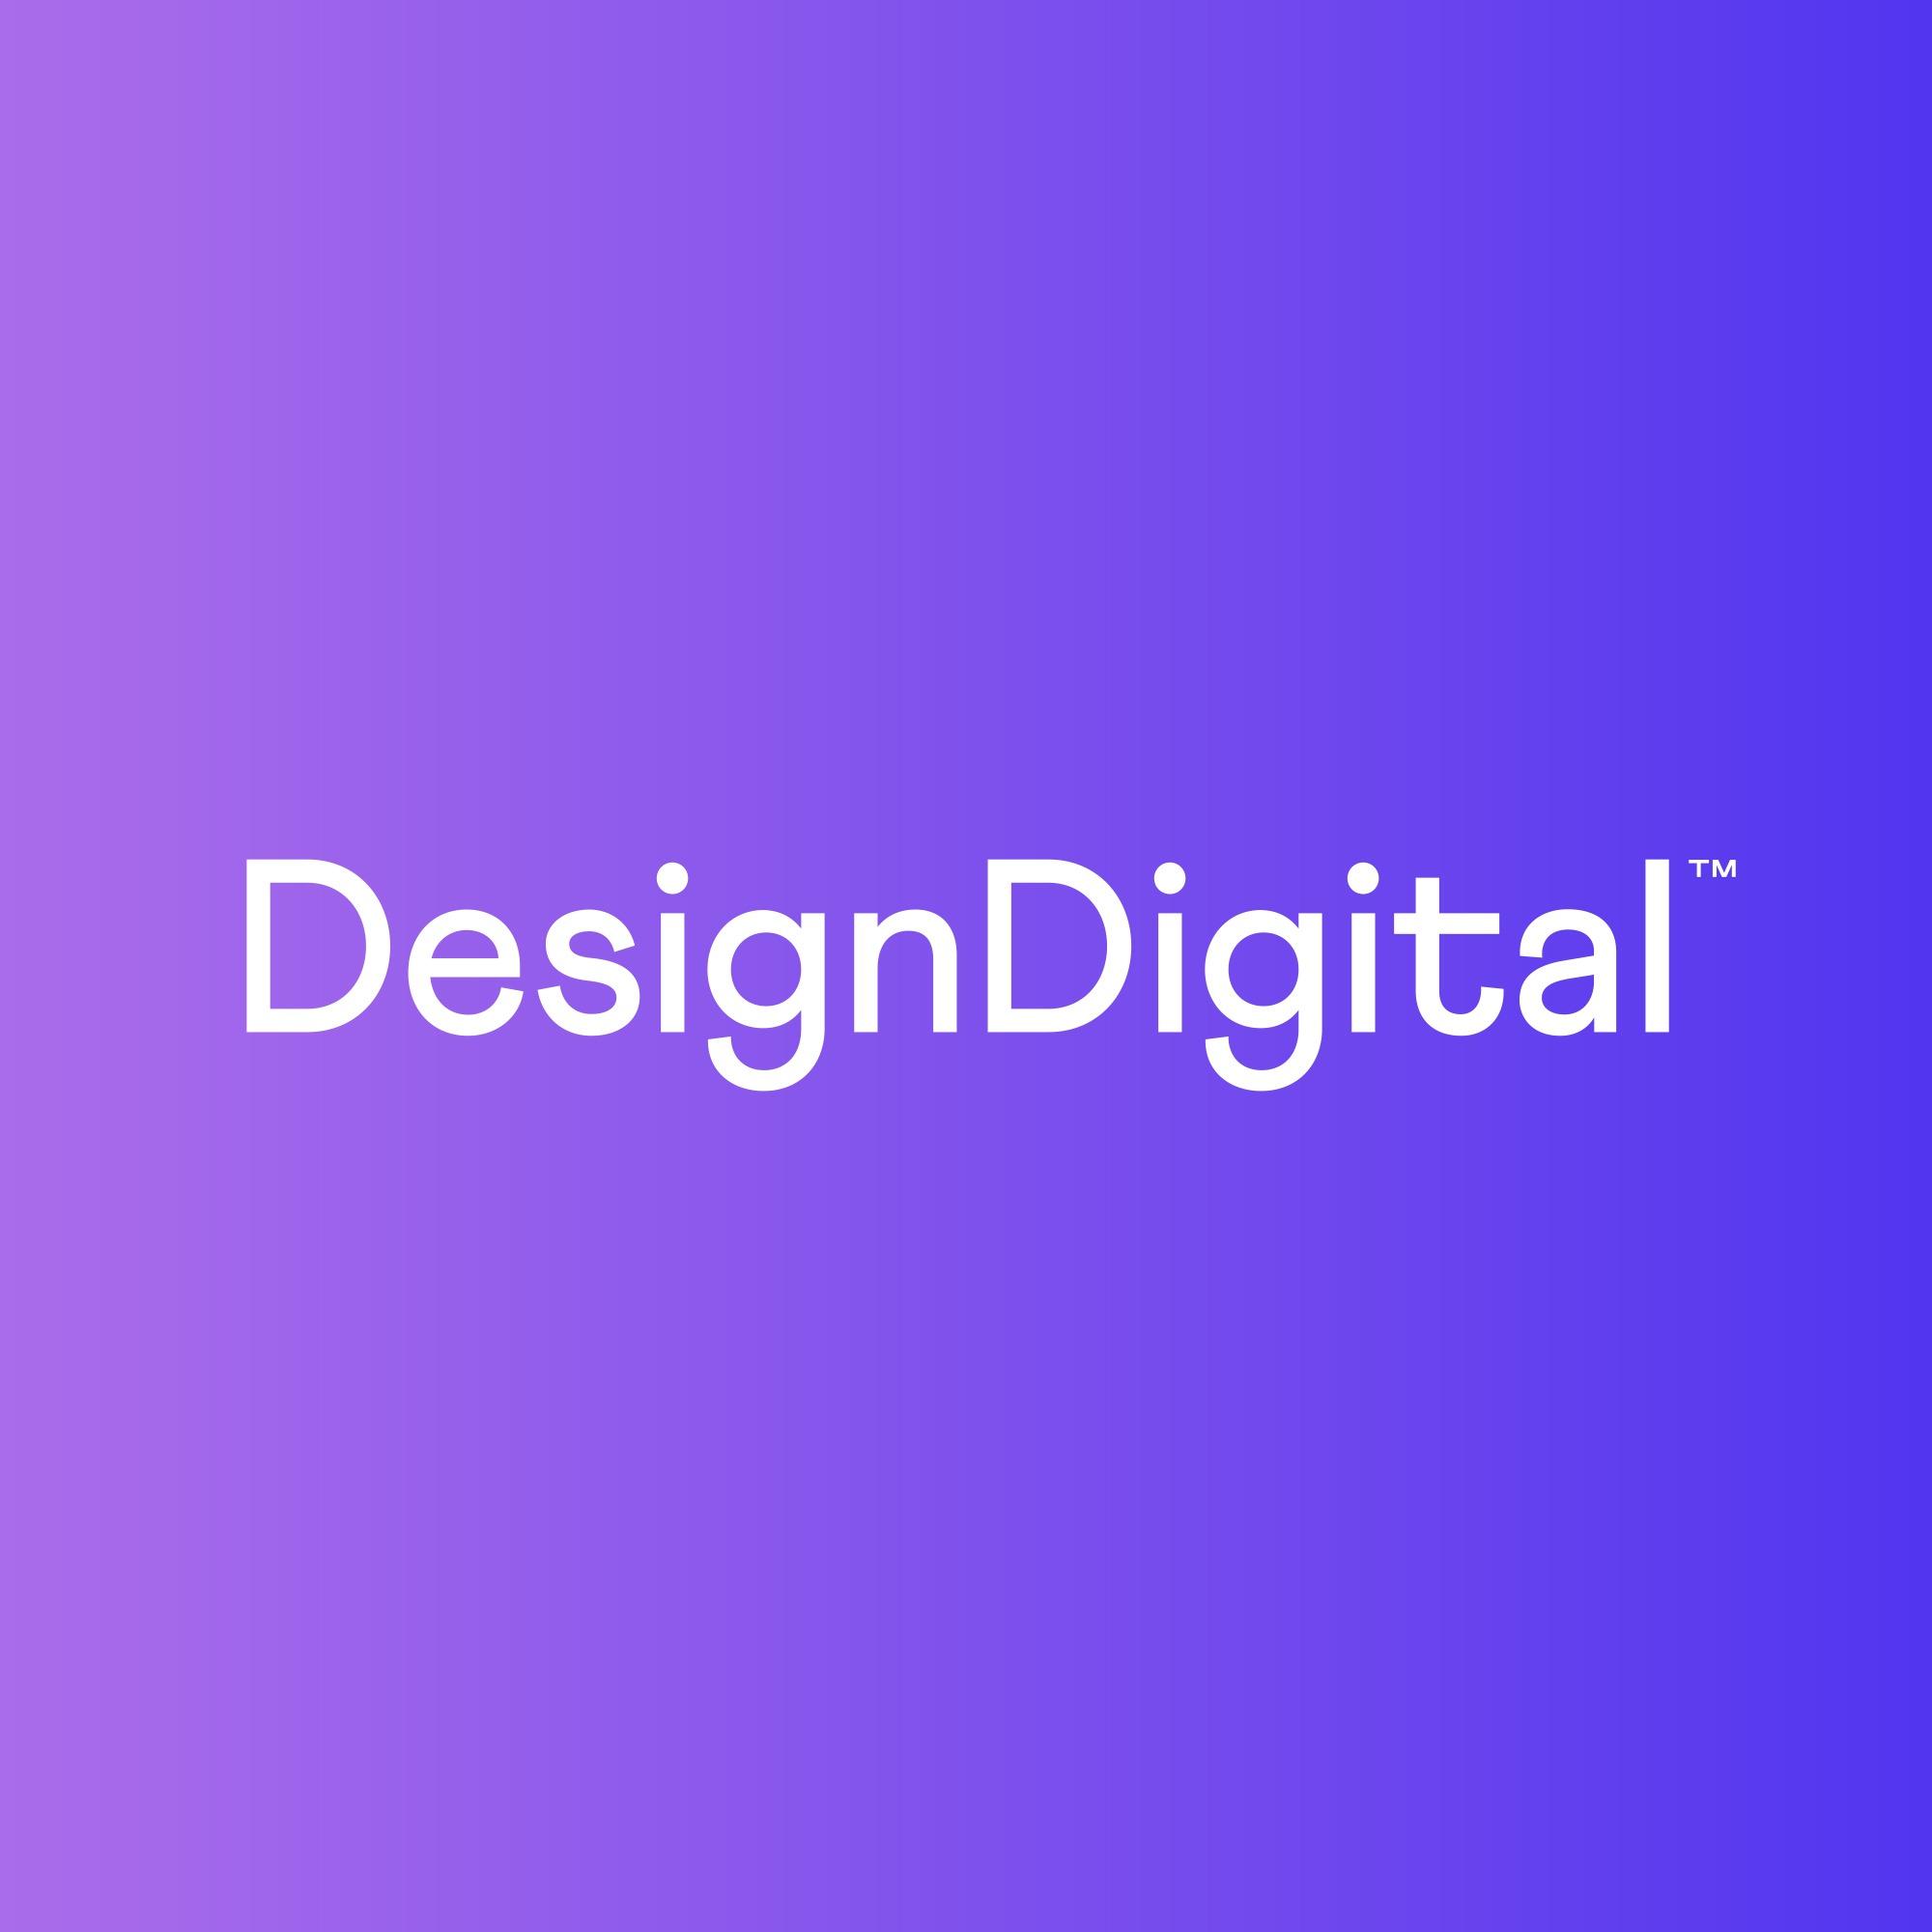 Design Digital Melbourne